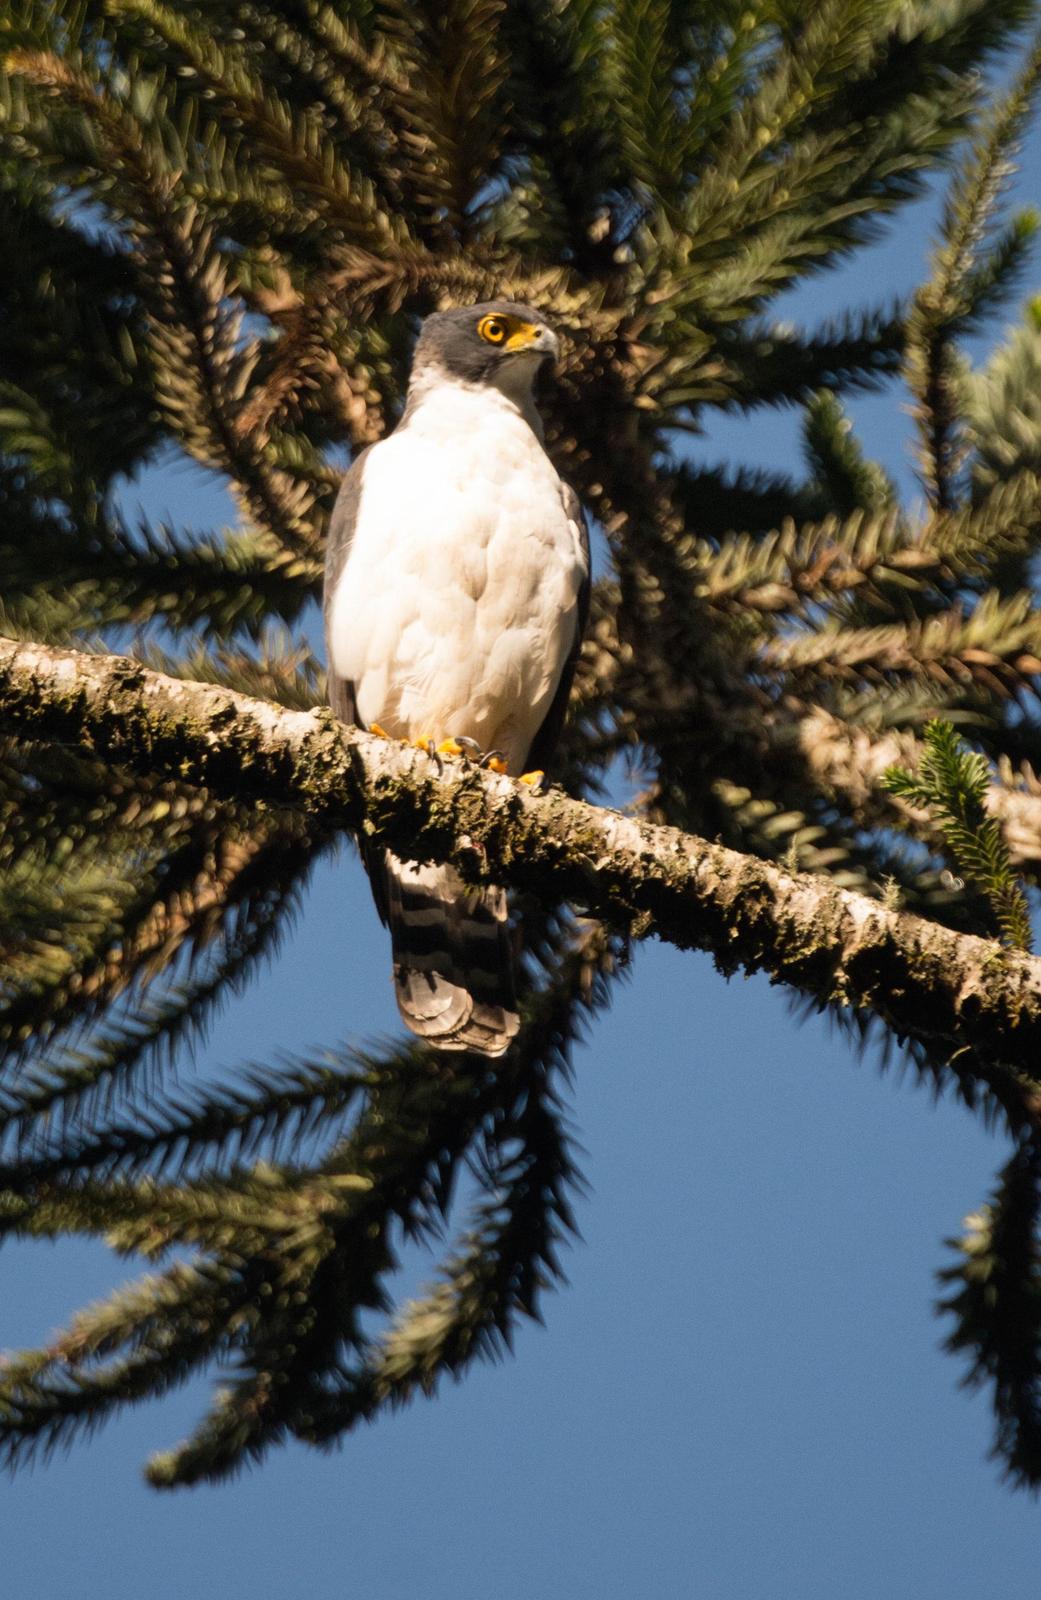 Gray-bellied Hawk Photo by rodrigo y castro